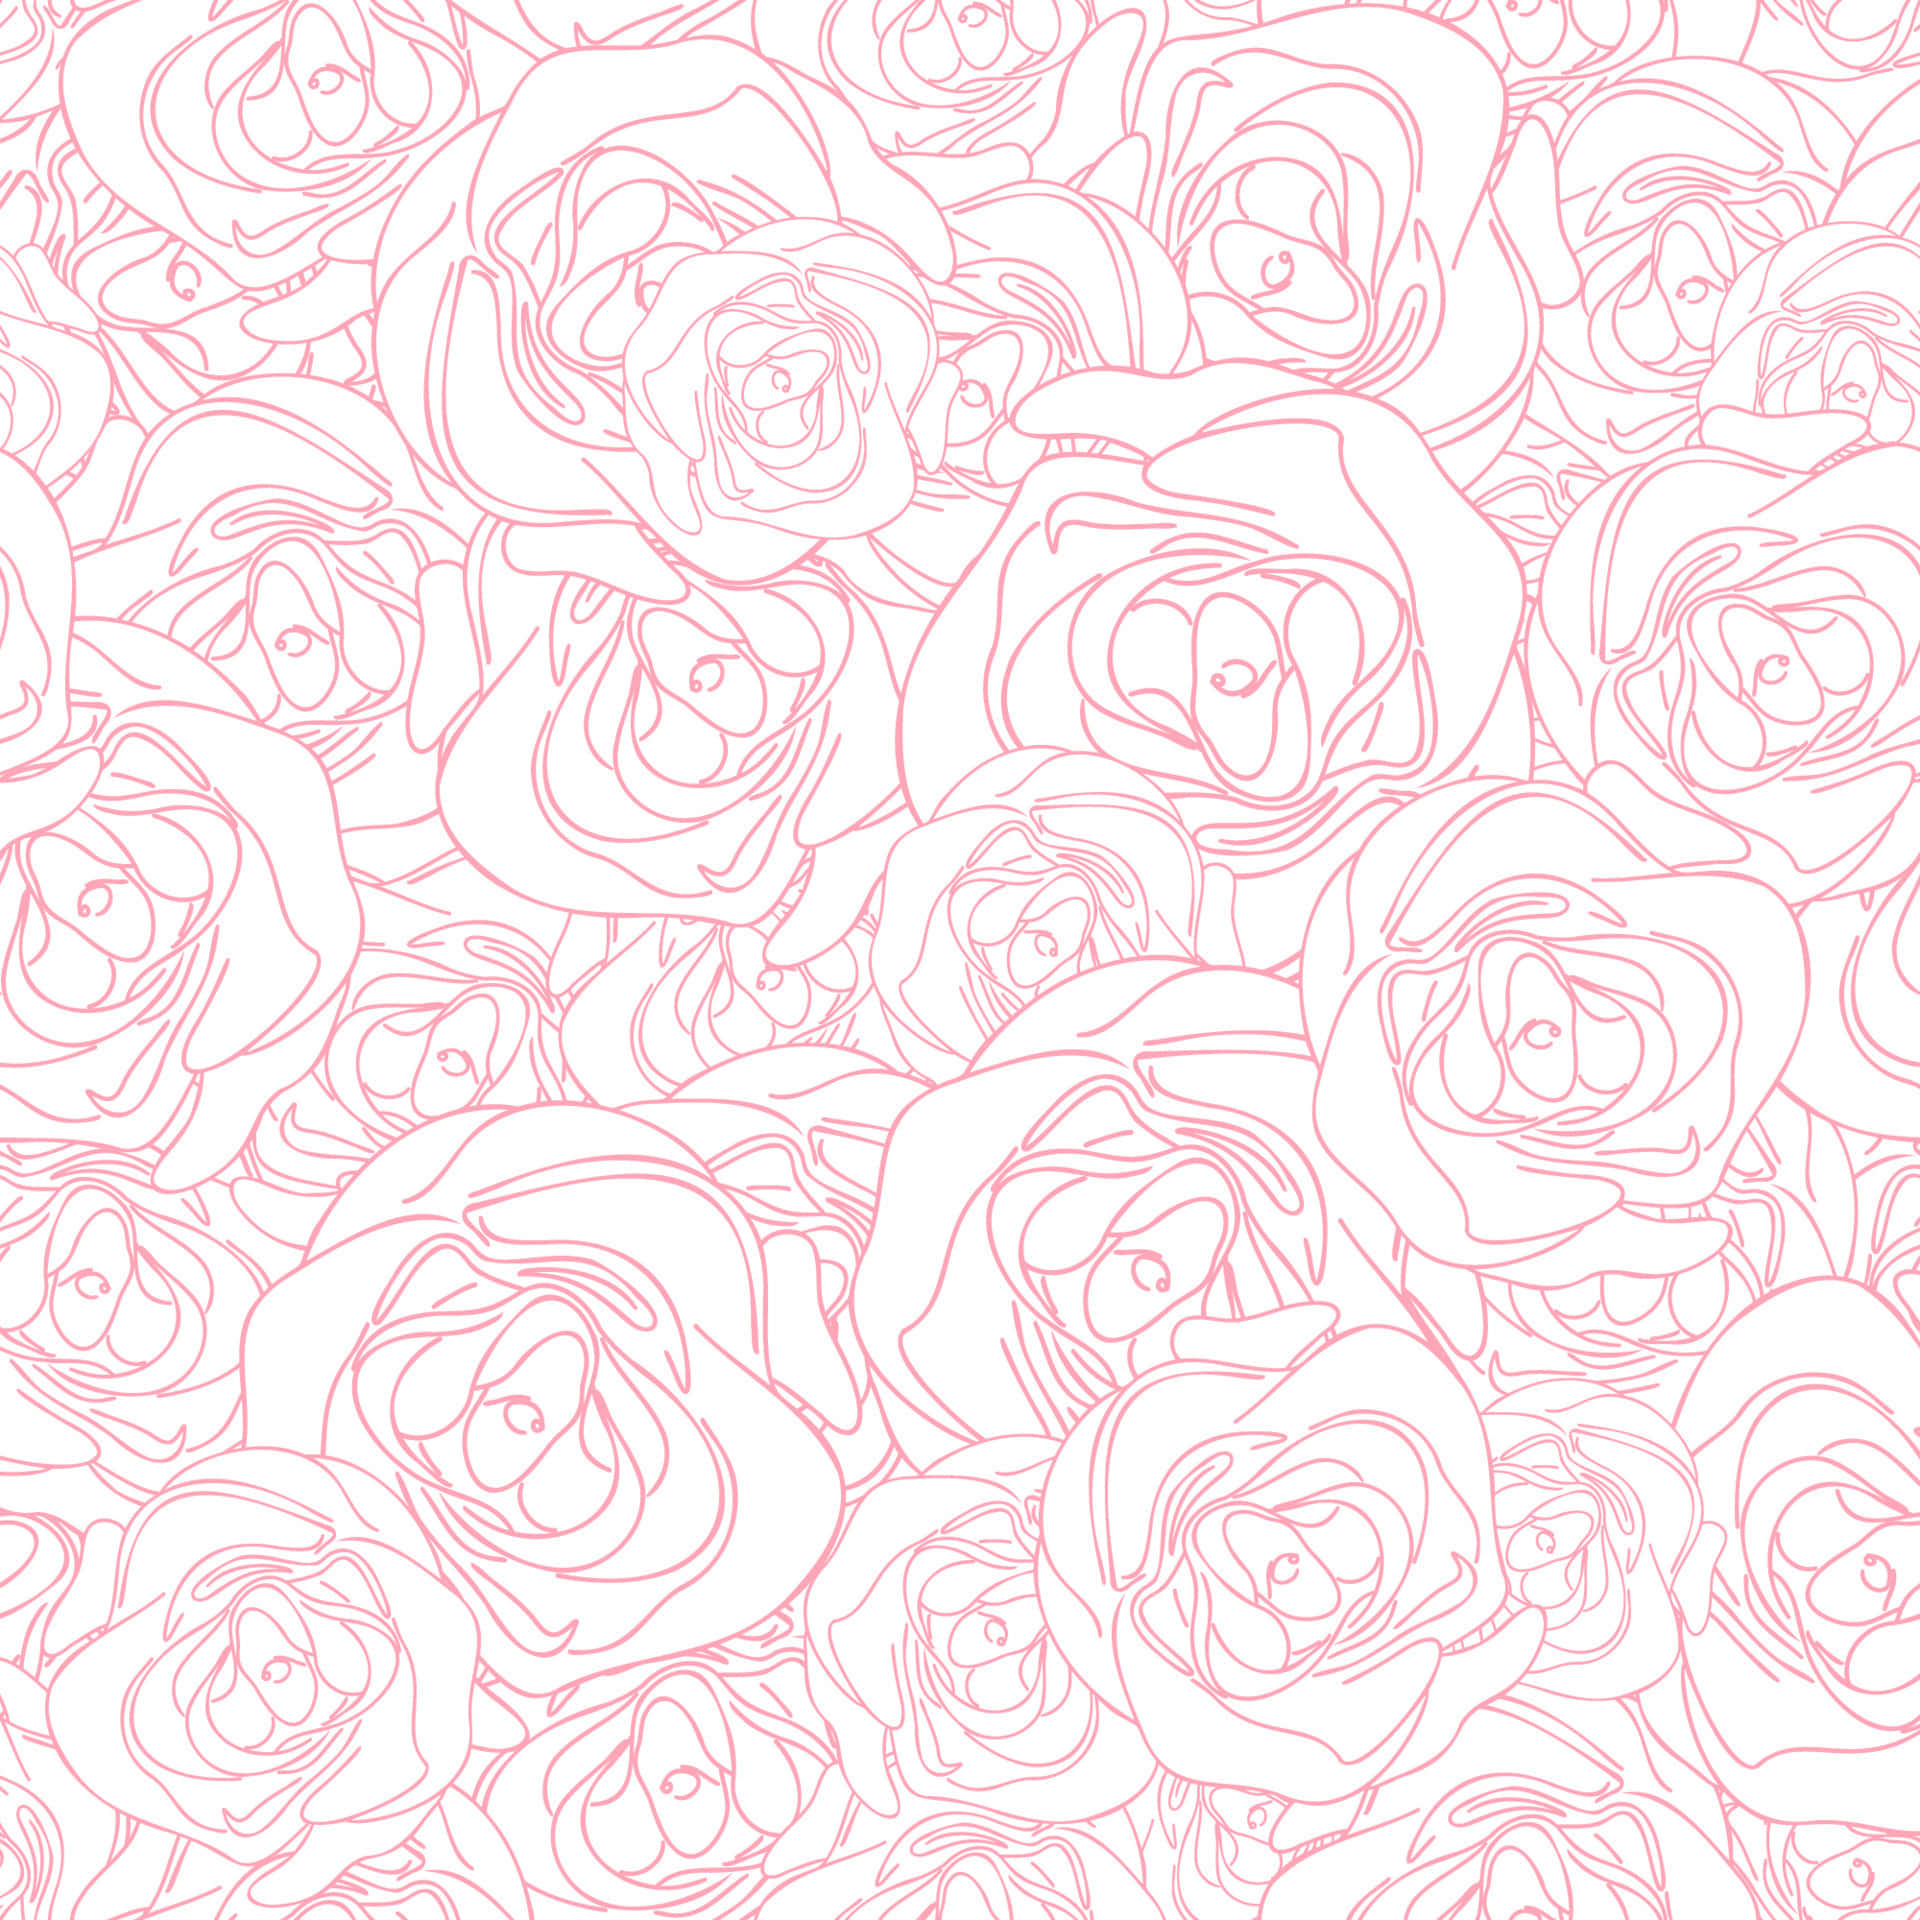 Njutav Skönheten I En Livlig Rosa Blomsterdisplay. Wallpaper